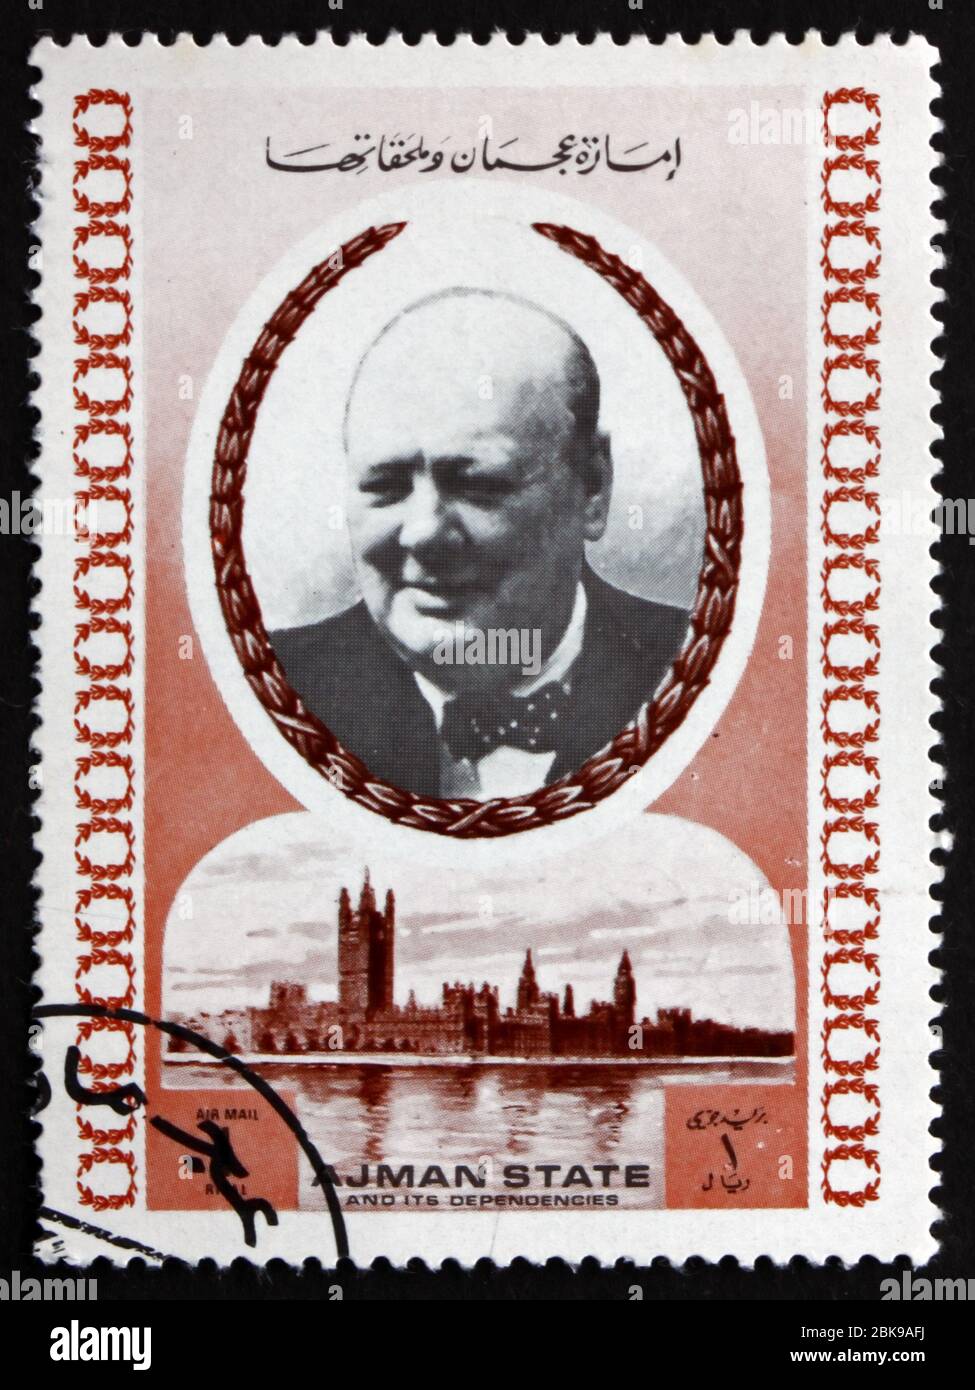 AJMAN - UM 1972: Eine in Ajman gedruckte Briefmarke zeigt Winston Churchill, britischen Politiker, zweimal Premierminister des Vereinigten Königreichs, um 1972 Stockfoto